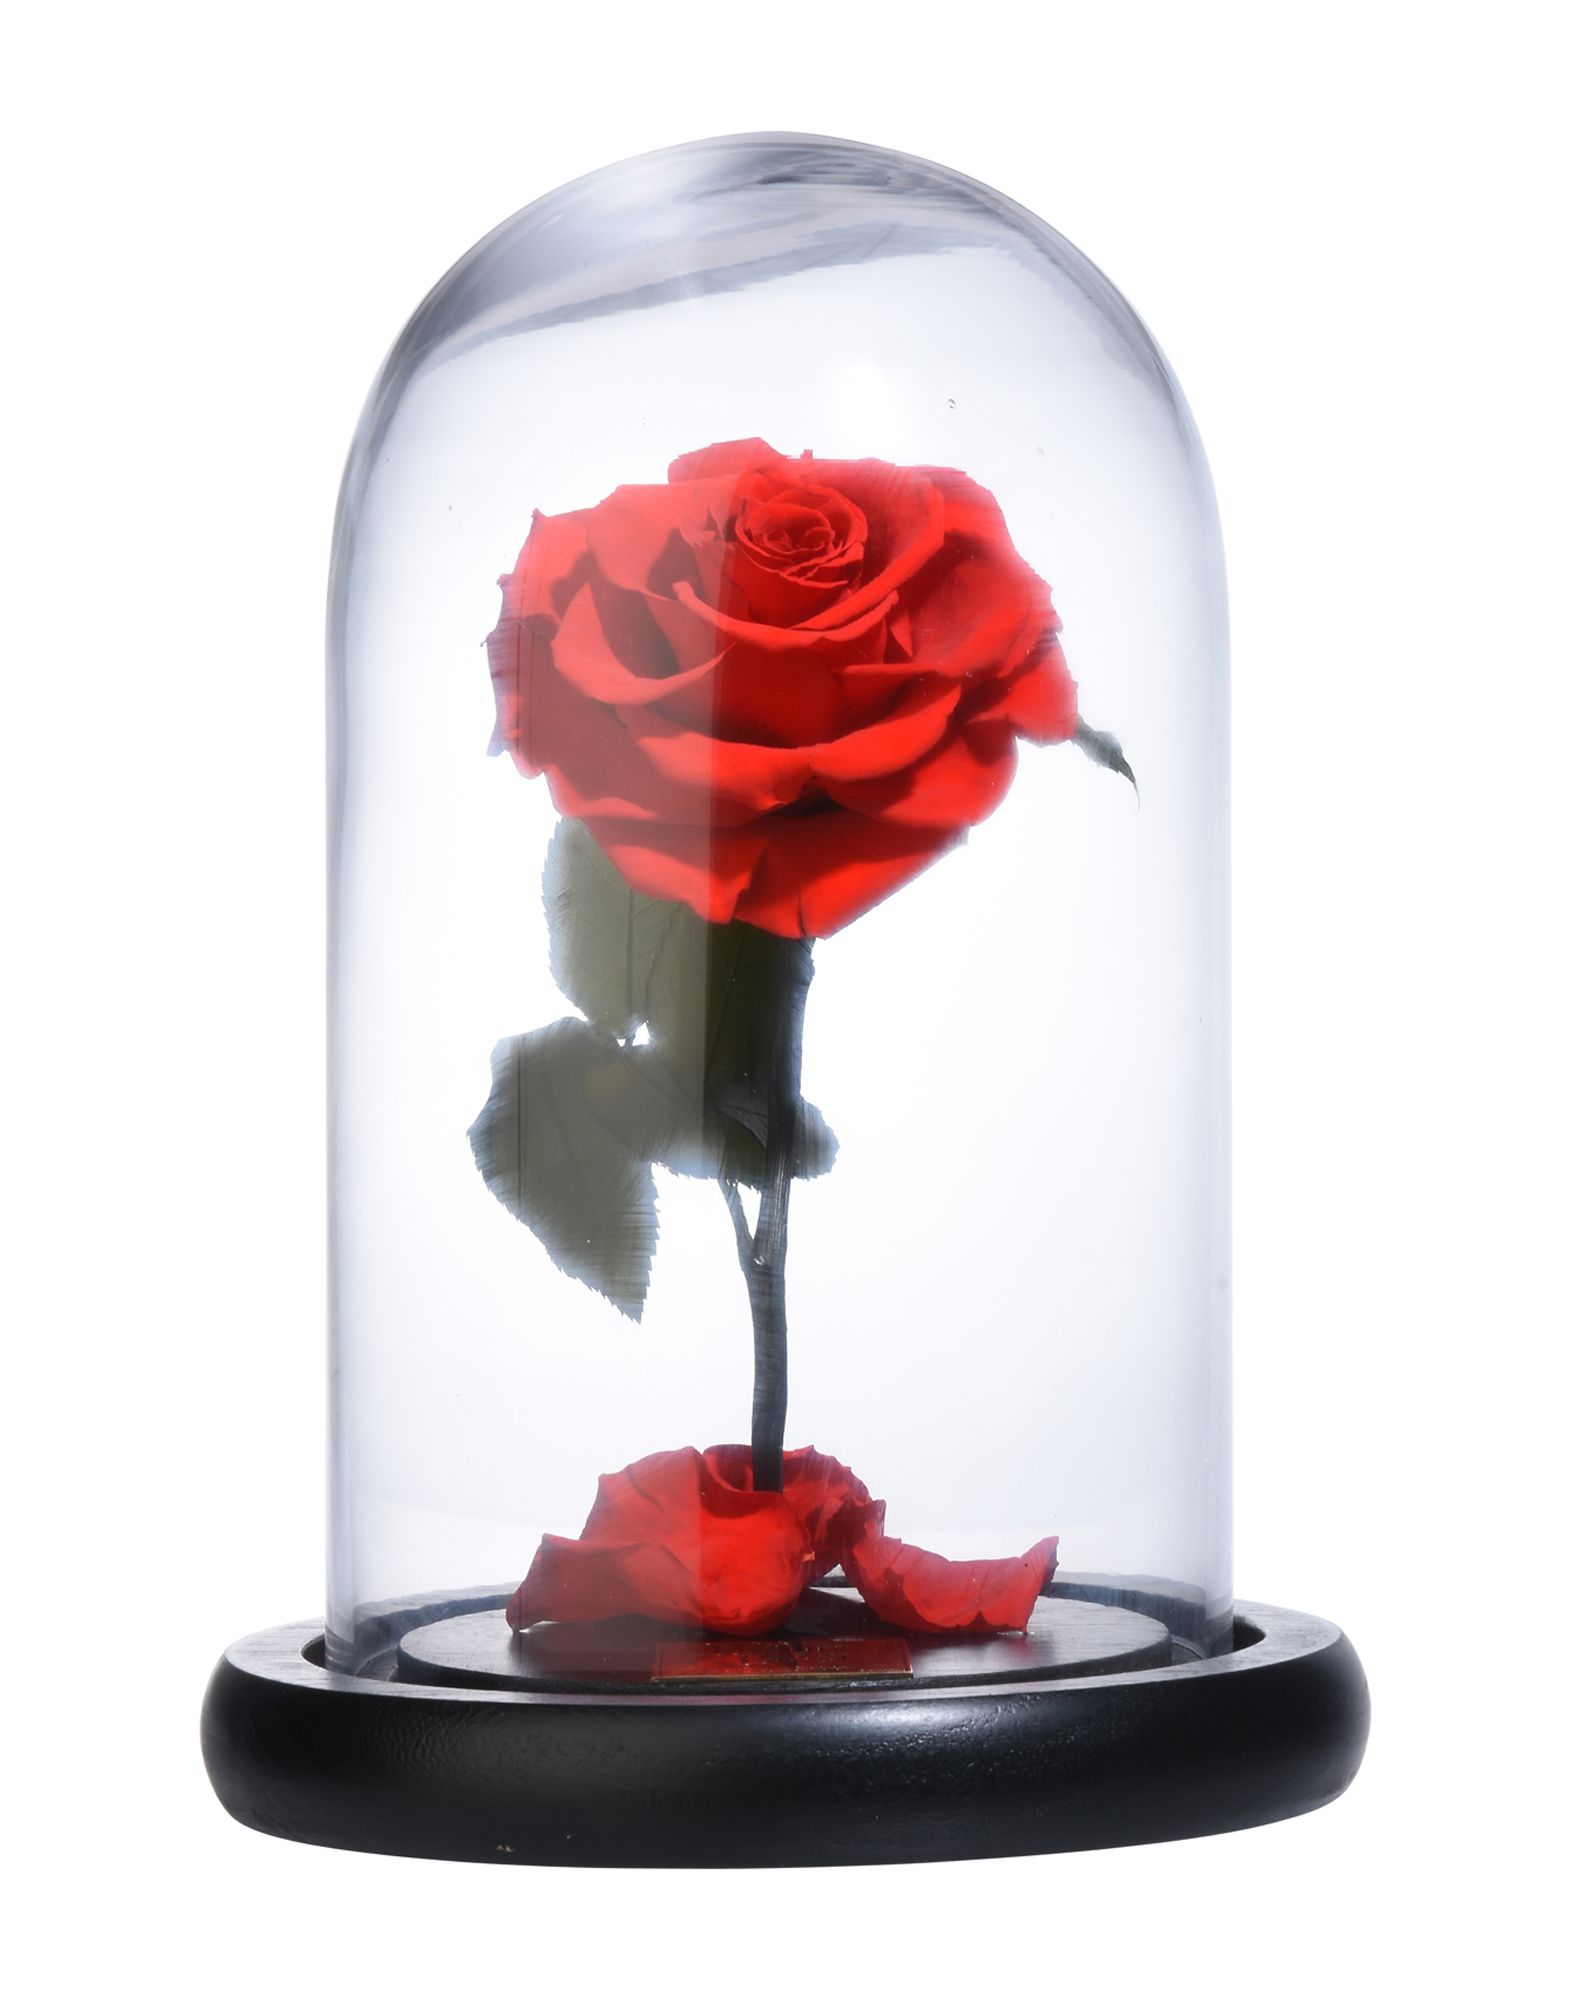 《期間限定セール開催中!》FOREVER ROSE London Unisex 雑貨 レッド ガラス Mini Bella Rose